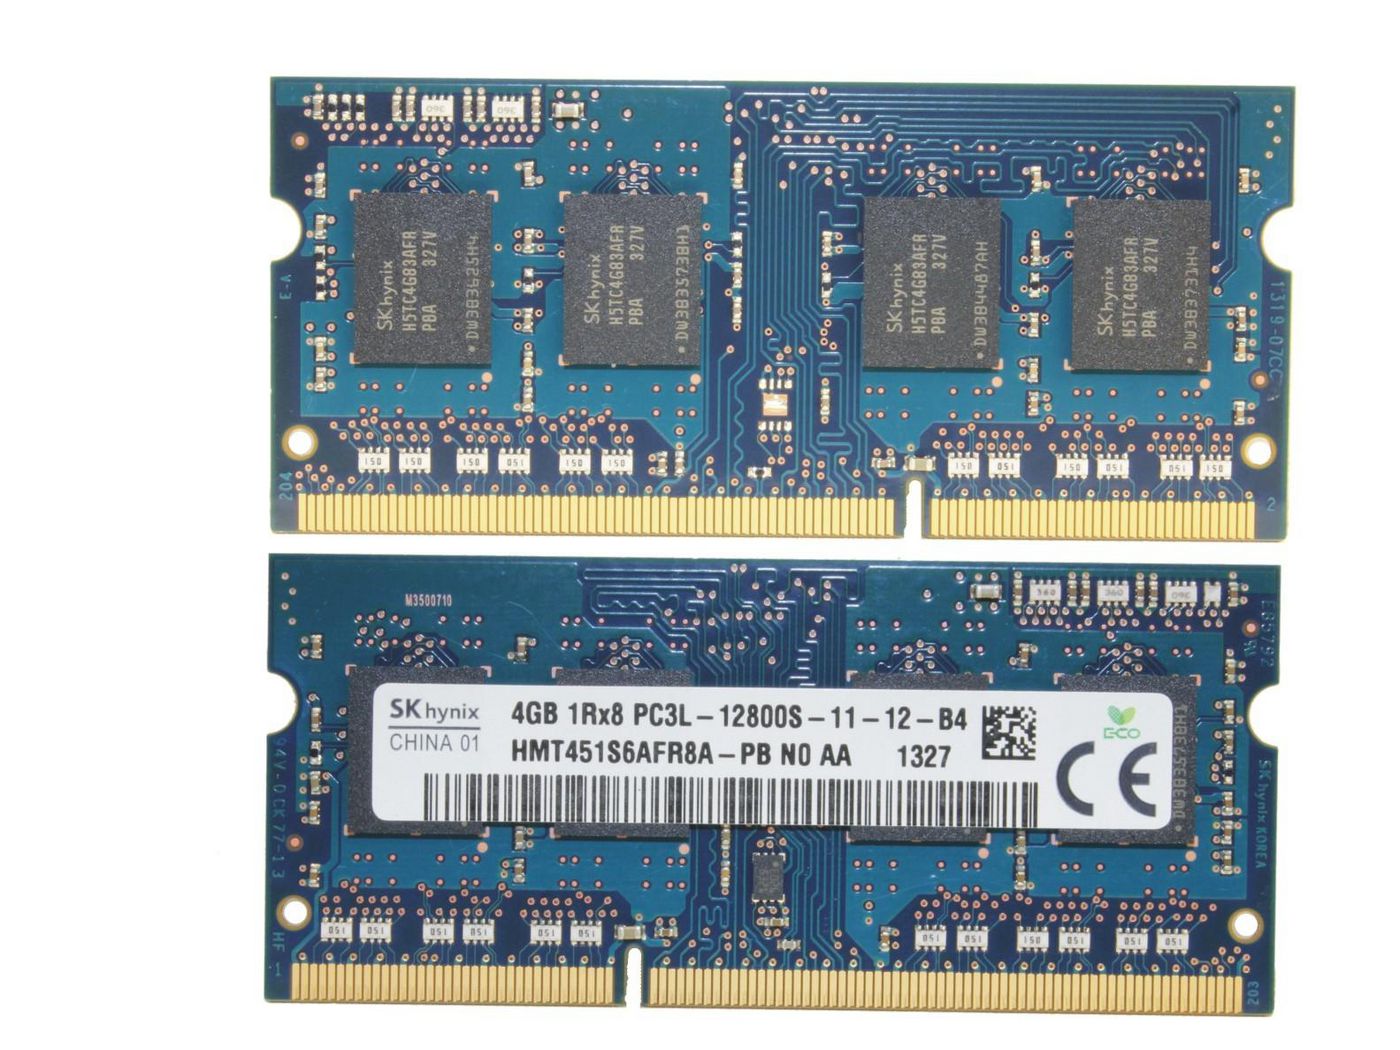 Fujitsu FUJ:CA46212-4911 DDR3 4GB 1600 